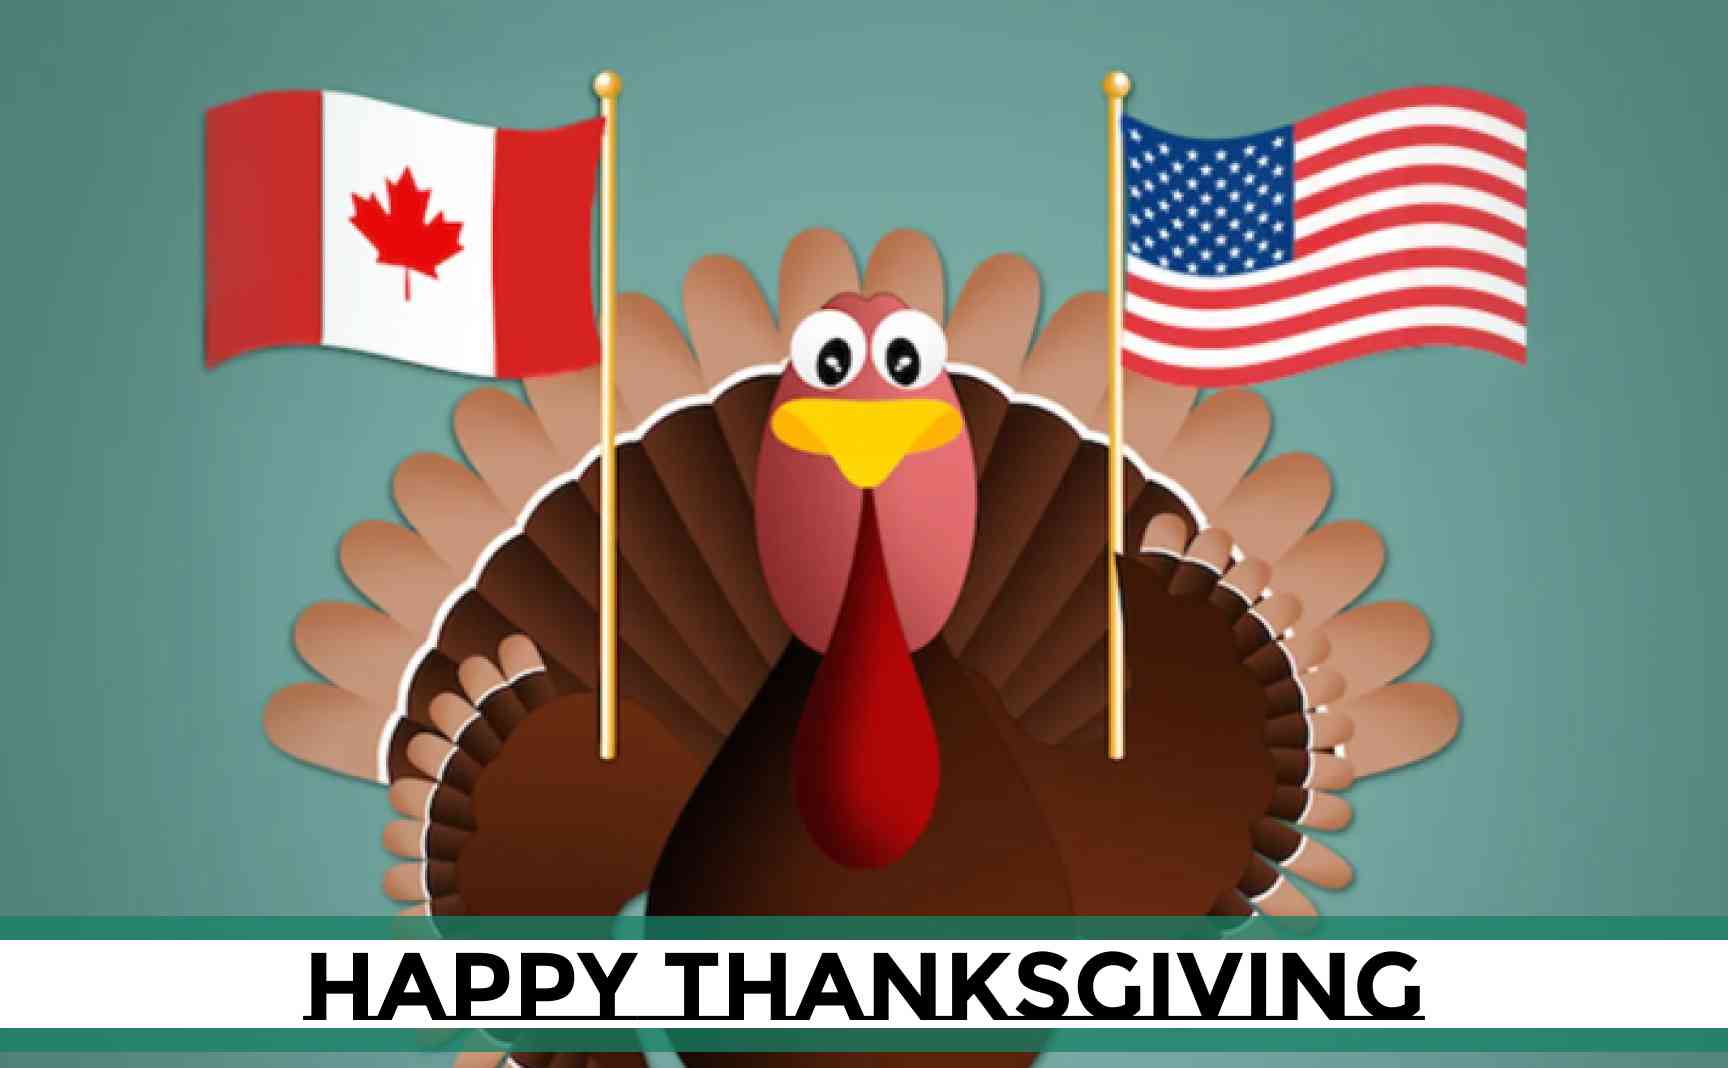 Acción de Gracias Americana y Canadiense: En qué se Parecen y en qué se Diferencian